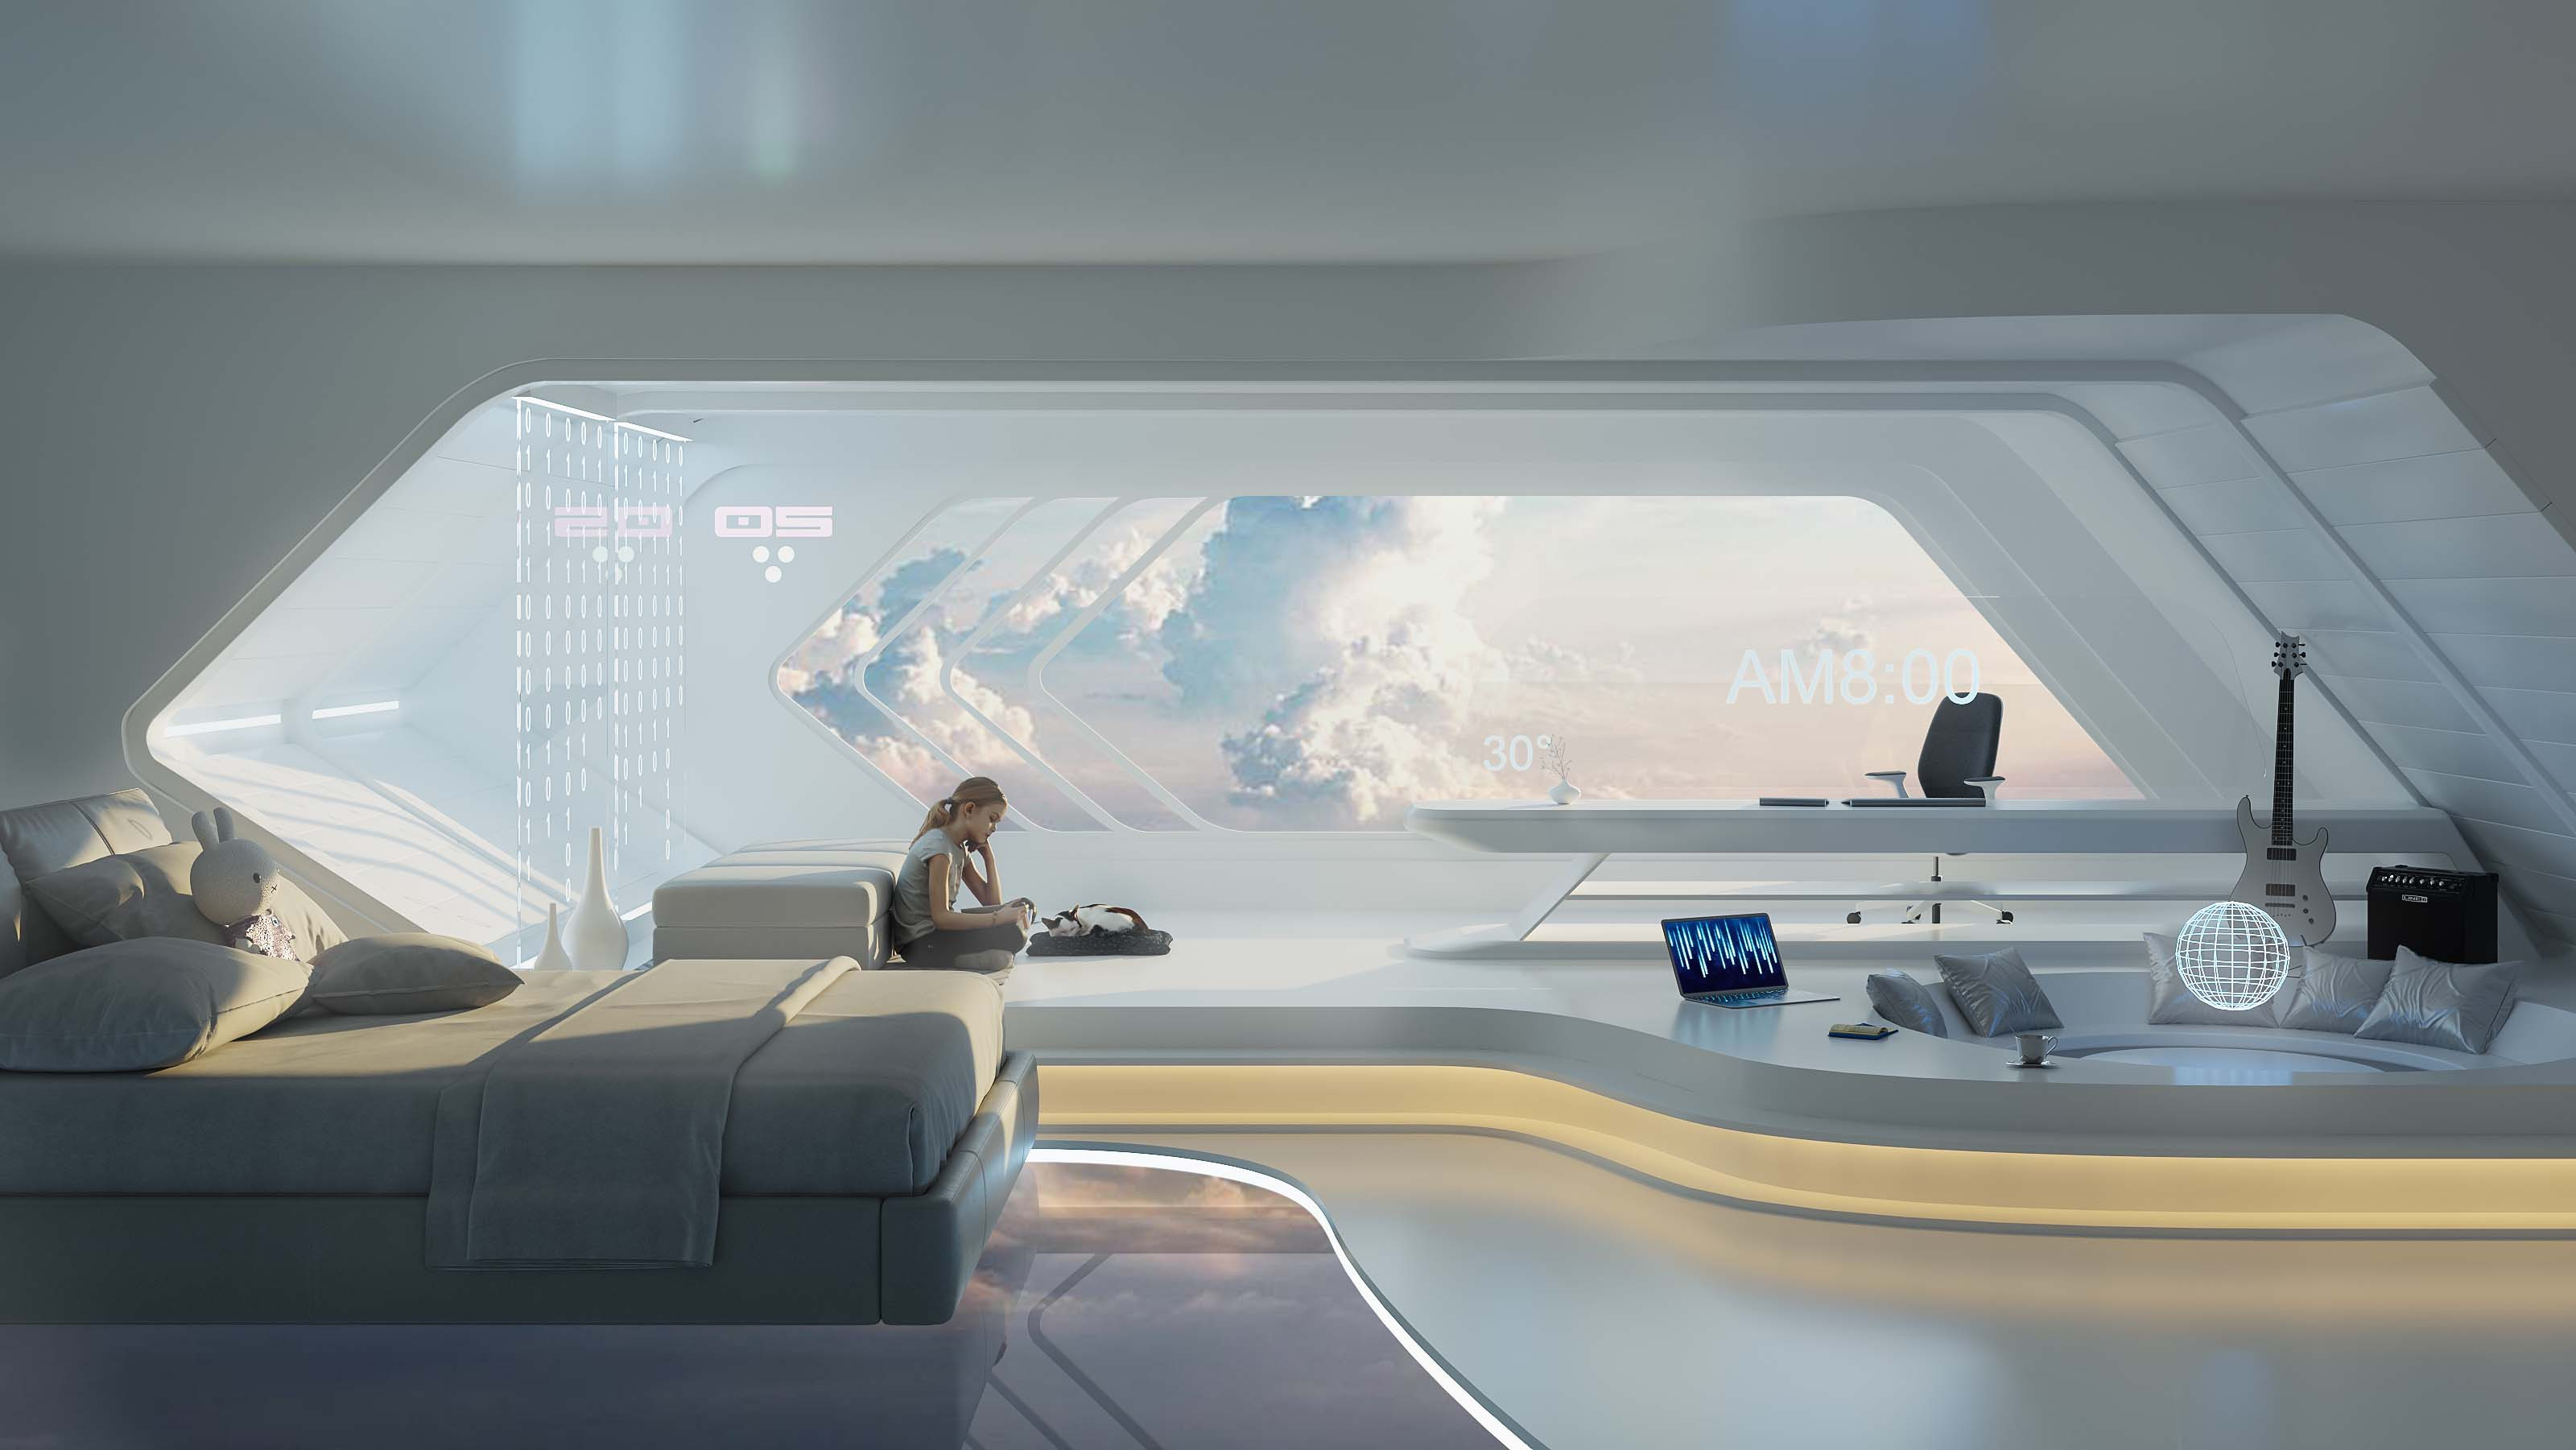 General 3200x1801 digital art futuristic cyberpunk bedroom